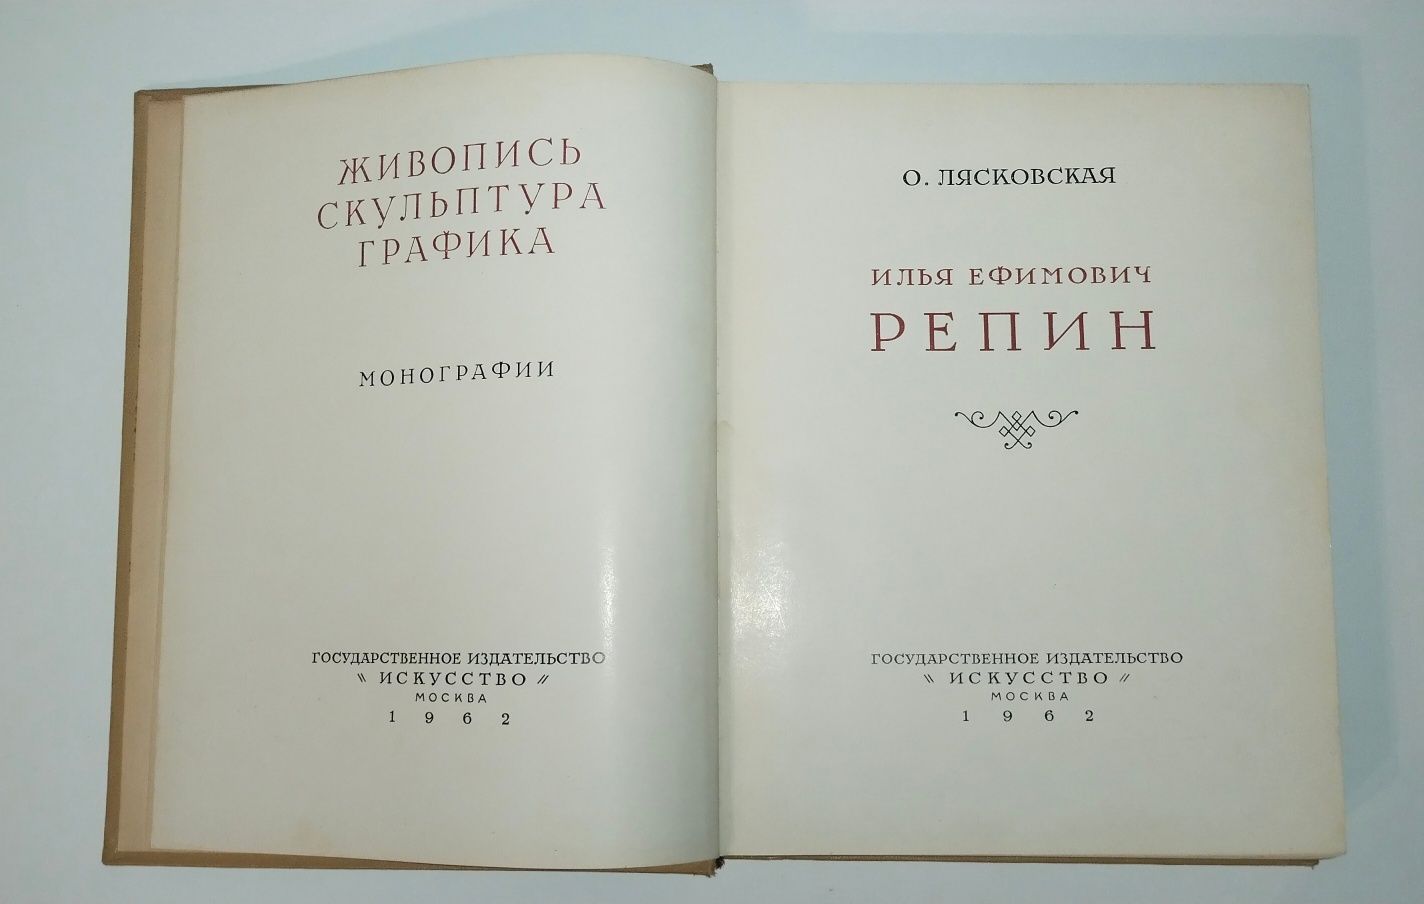 И. Репин О. Лясовская Искусство, 1962 г. Монографии.